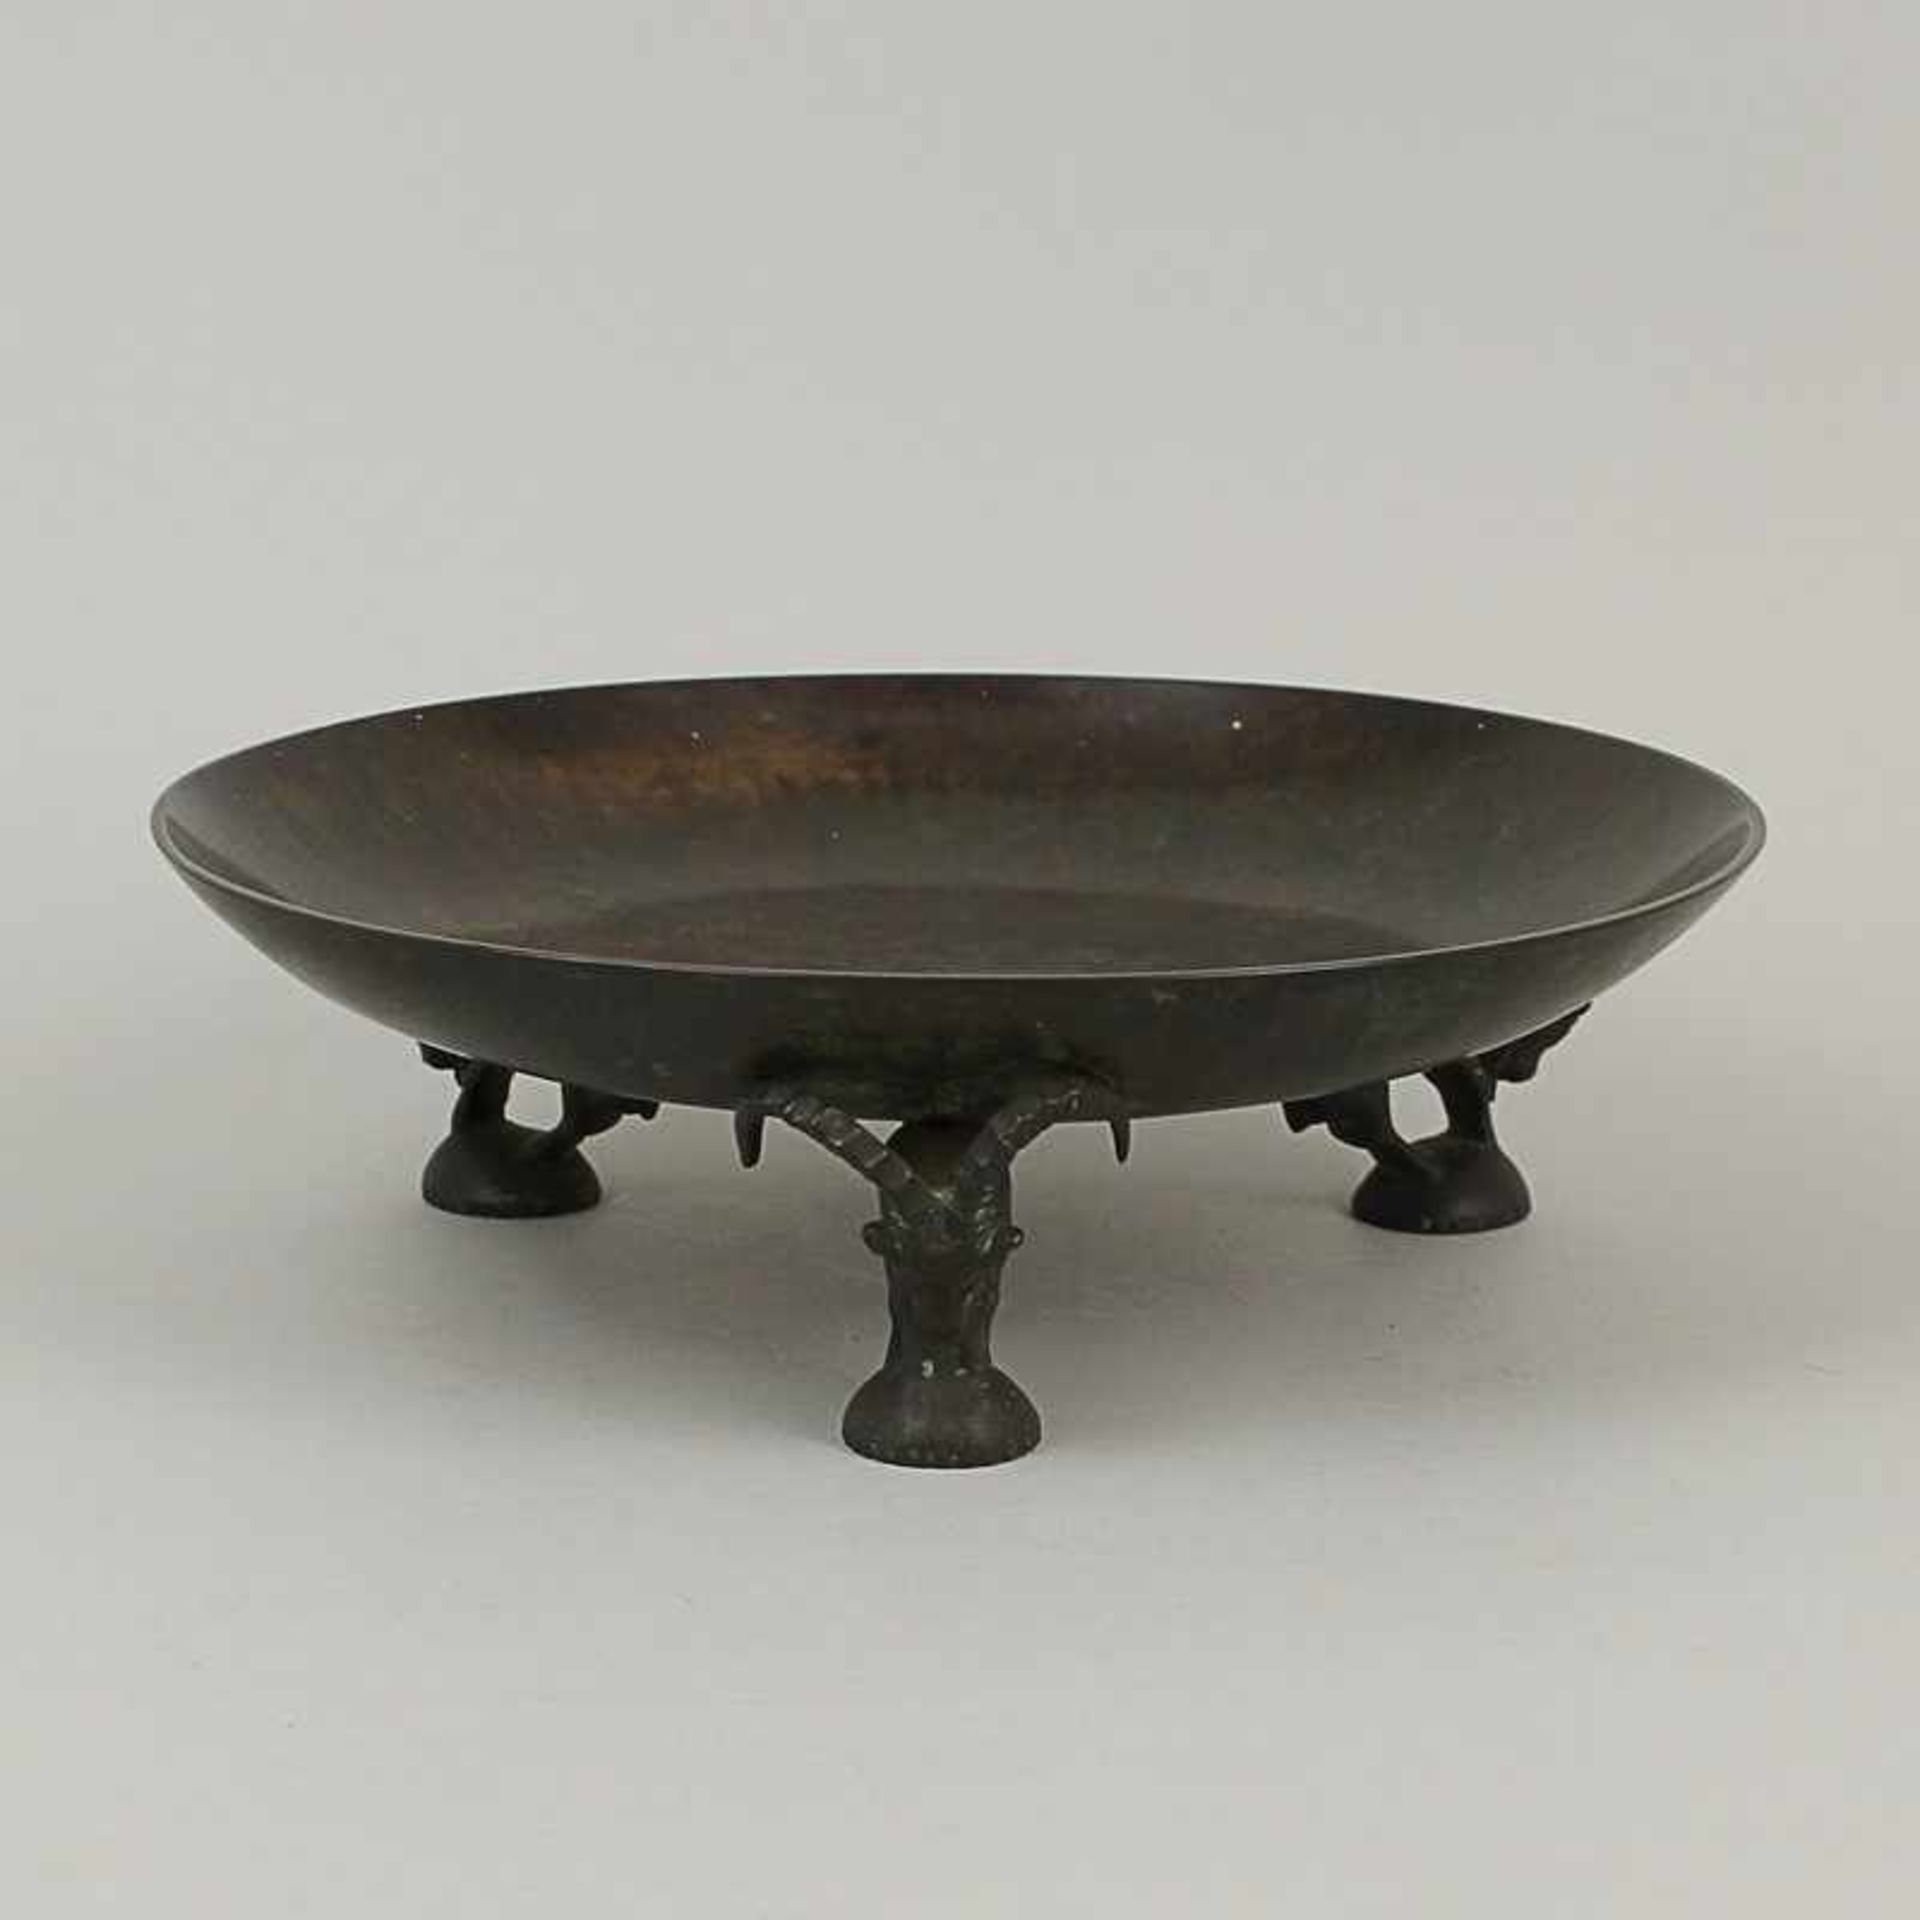 Schale um 1900, Bronze, patiniert, 3 Füße in Form von Steinböcken, vollplastisch ausgearbeitet,